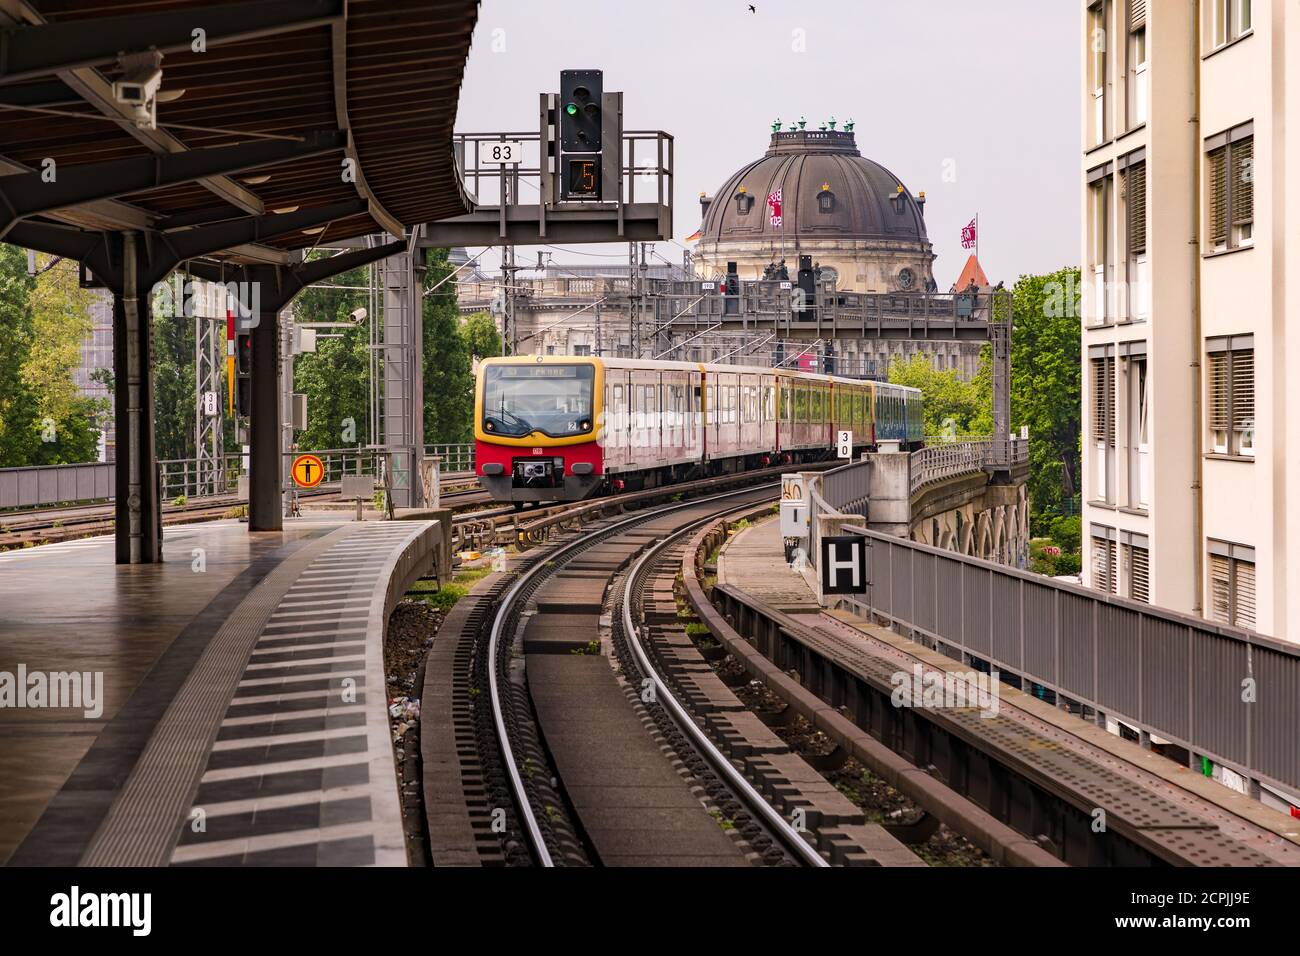 S-Bahn arriving at the Hackescher Markt stop in Berlin Stock Photo